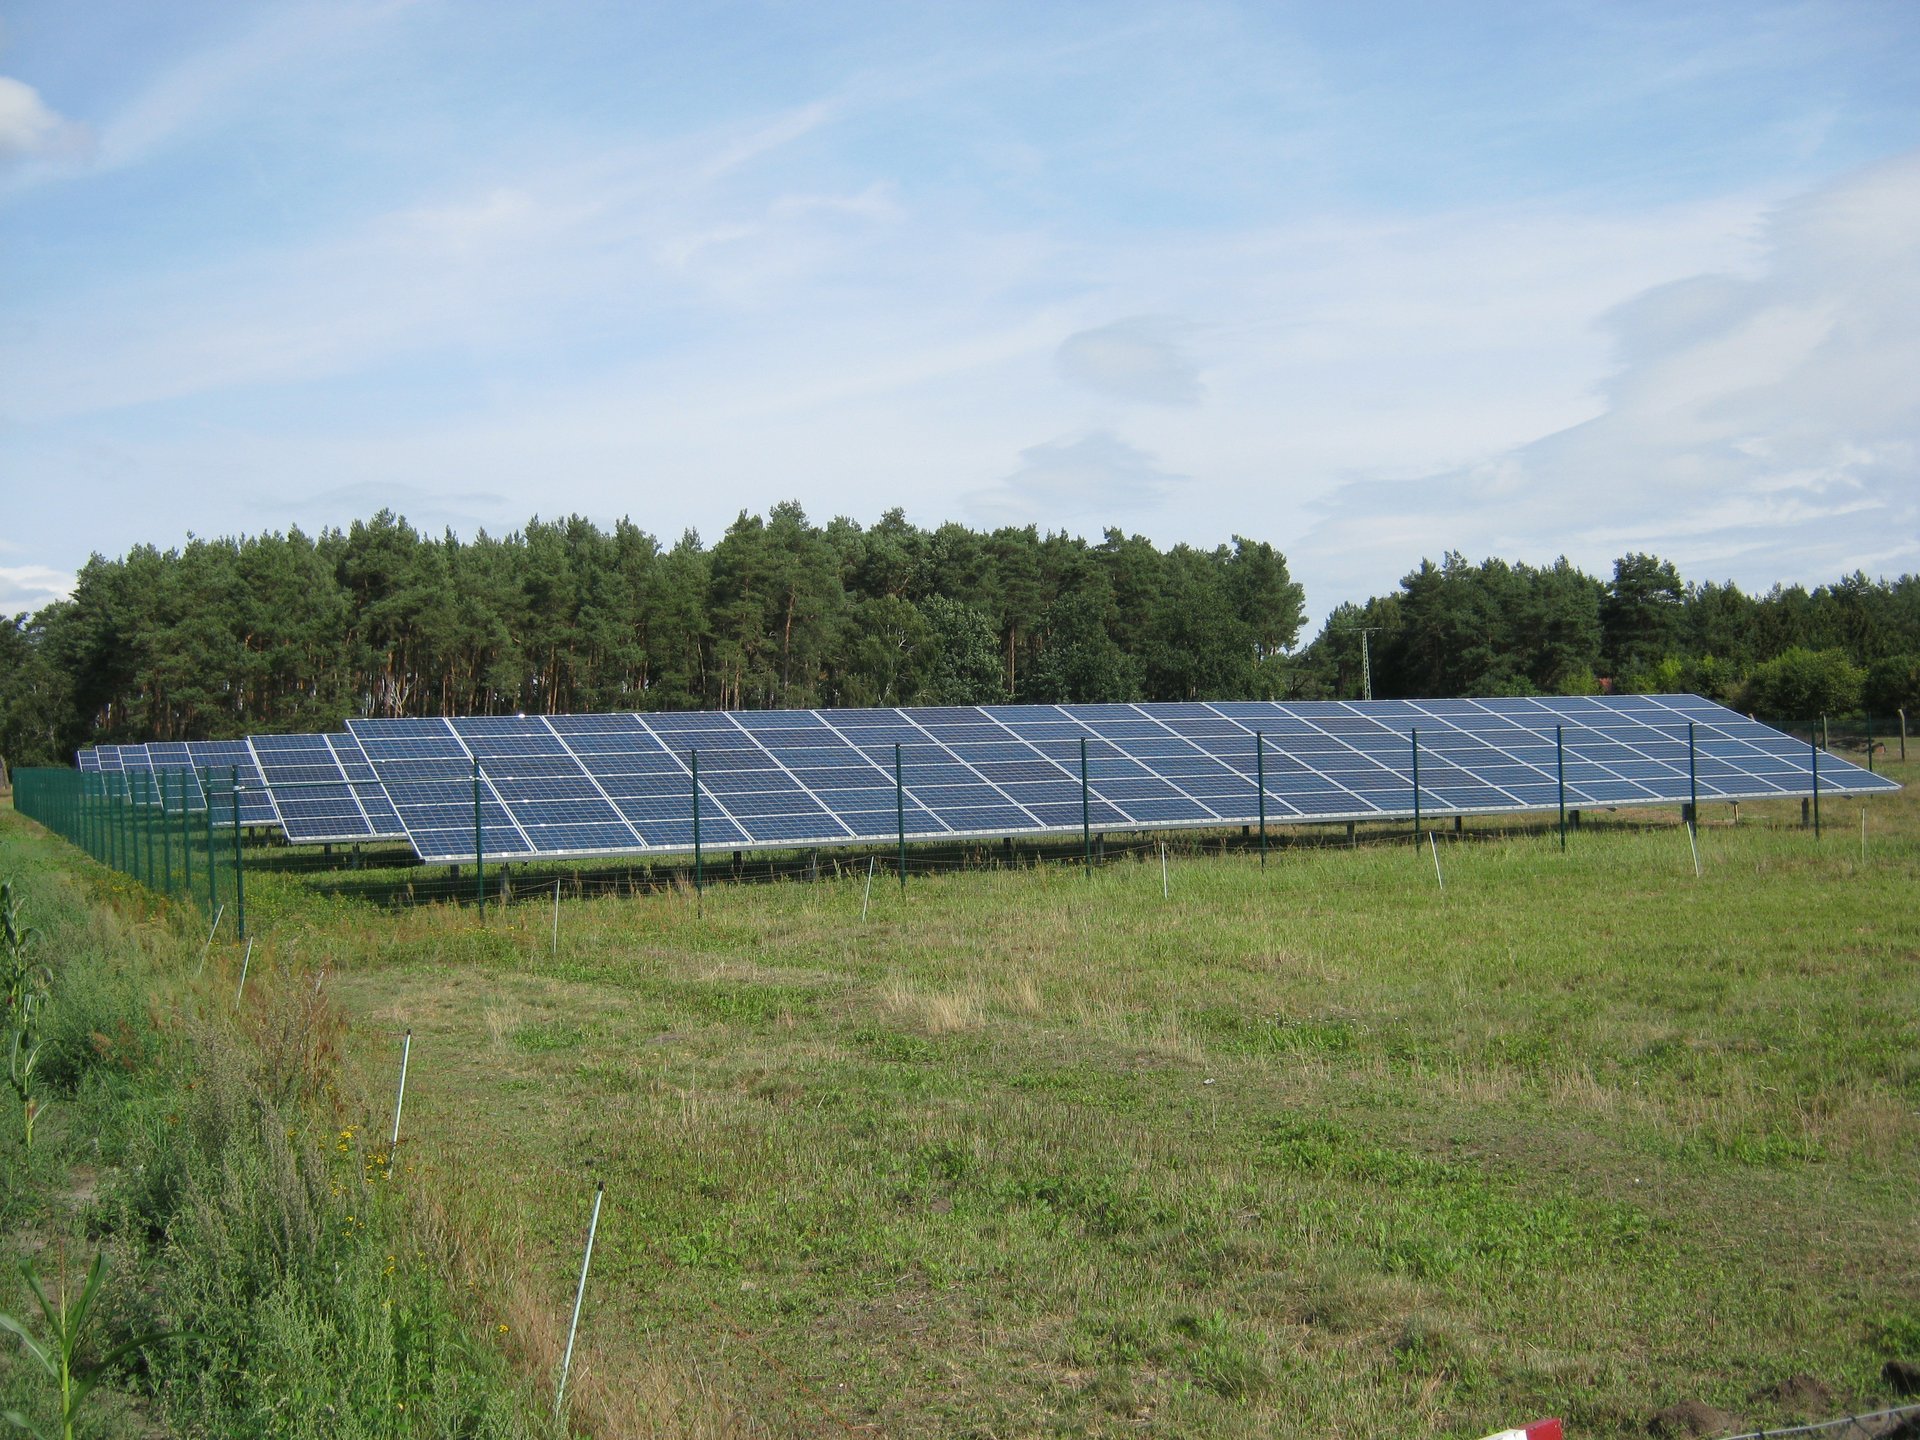 Solarpark Wöbbelin